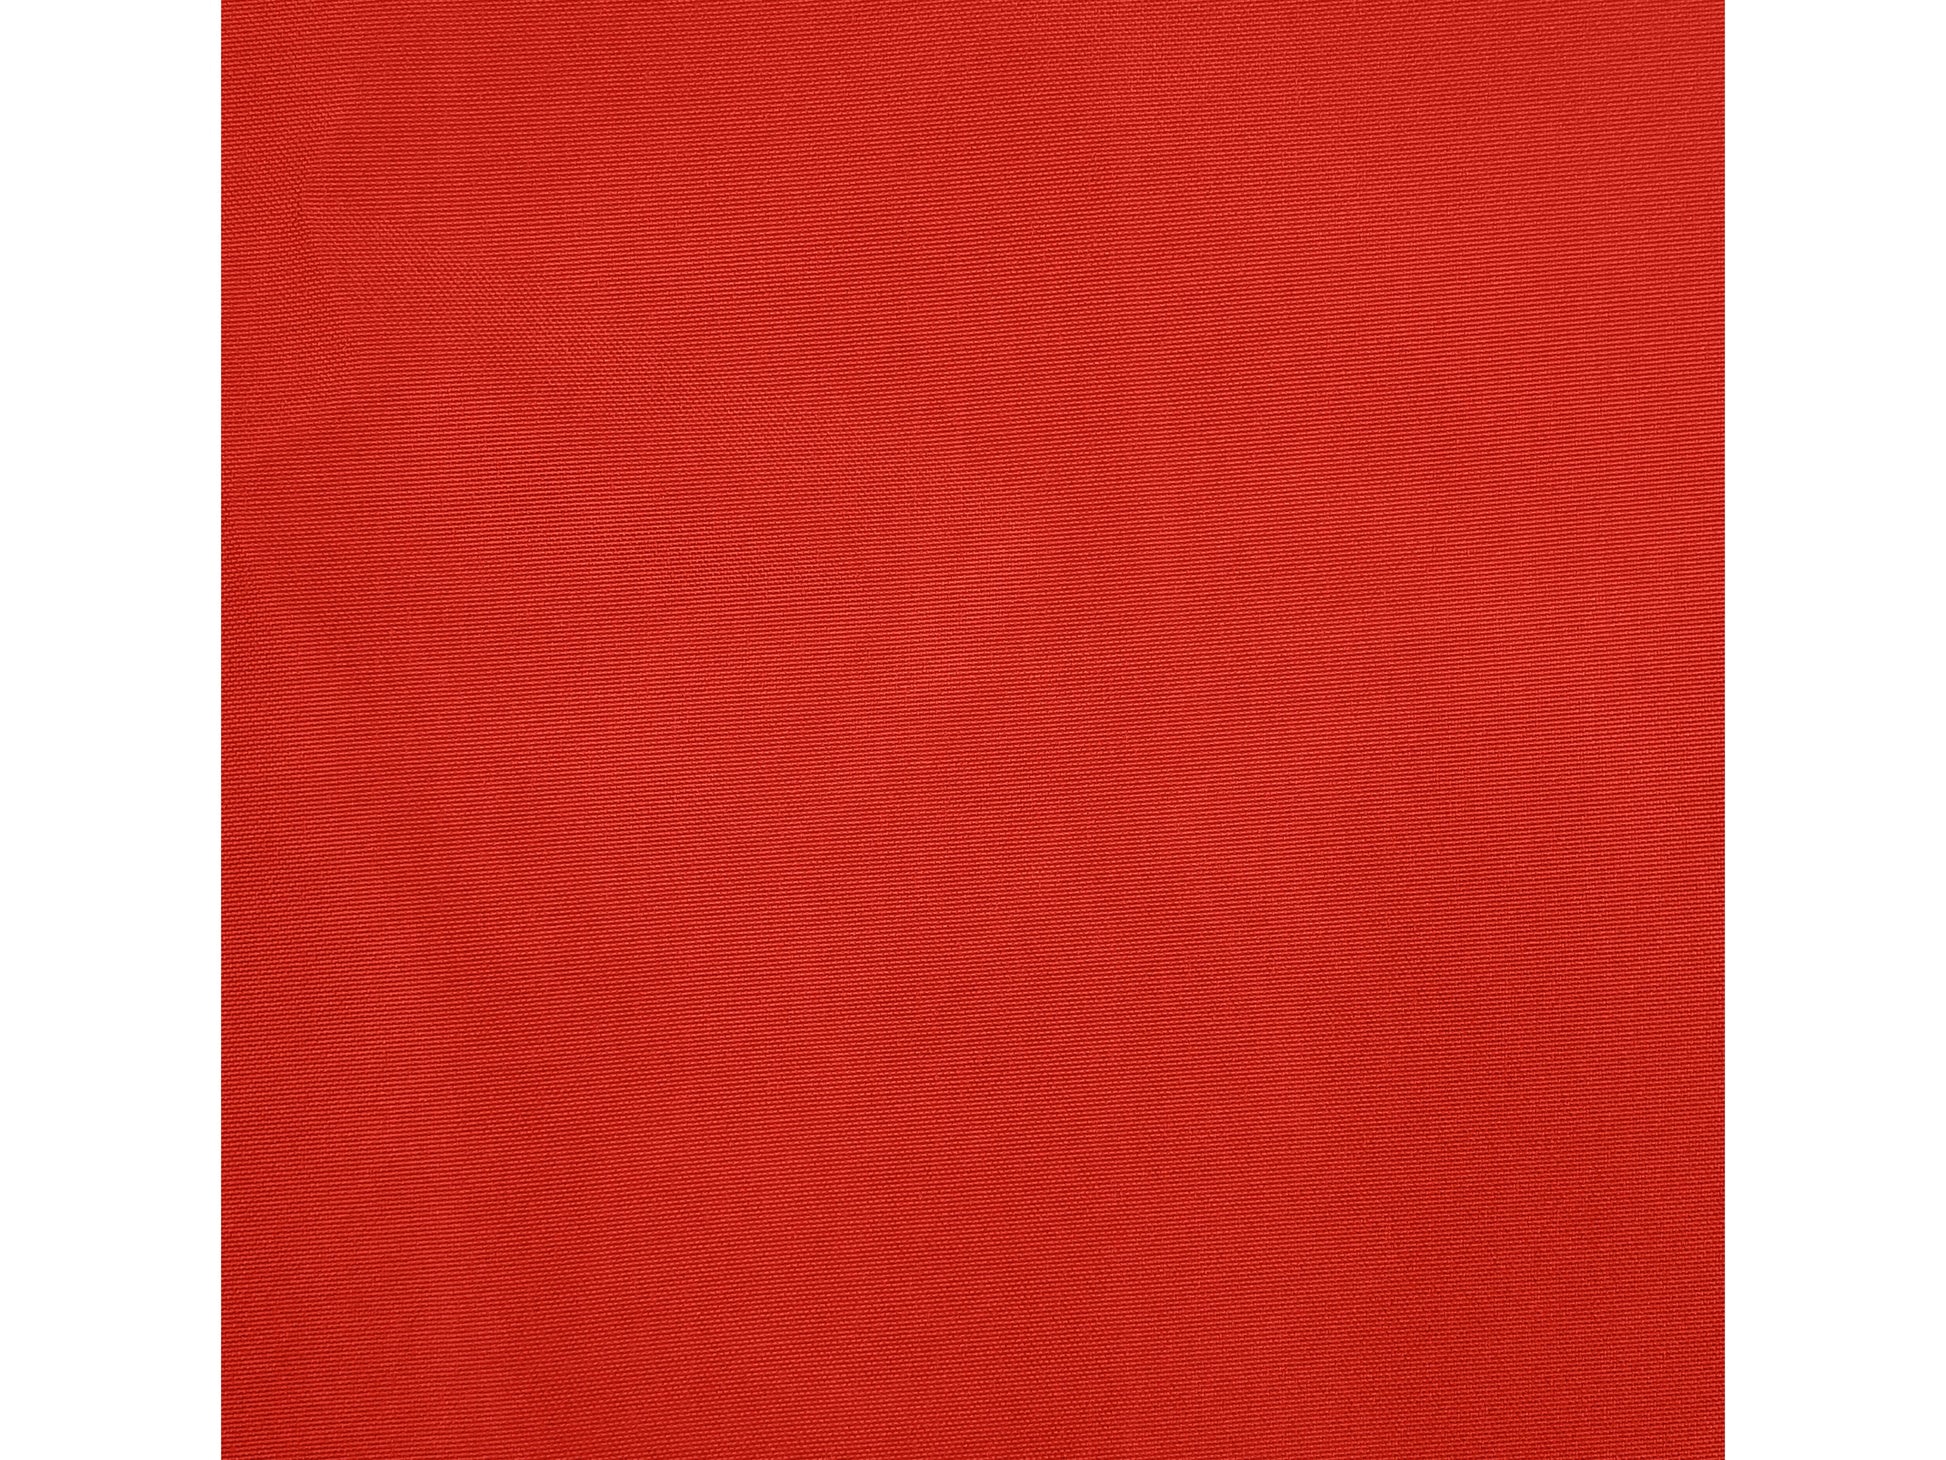 crimson red square patio umbrella, tilting 300 Series detail image CorLiving#color_crimson-red